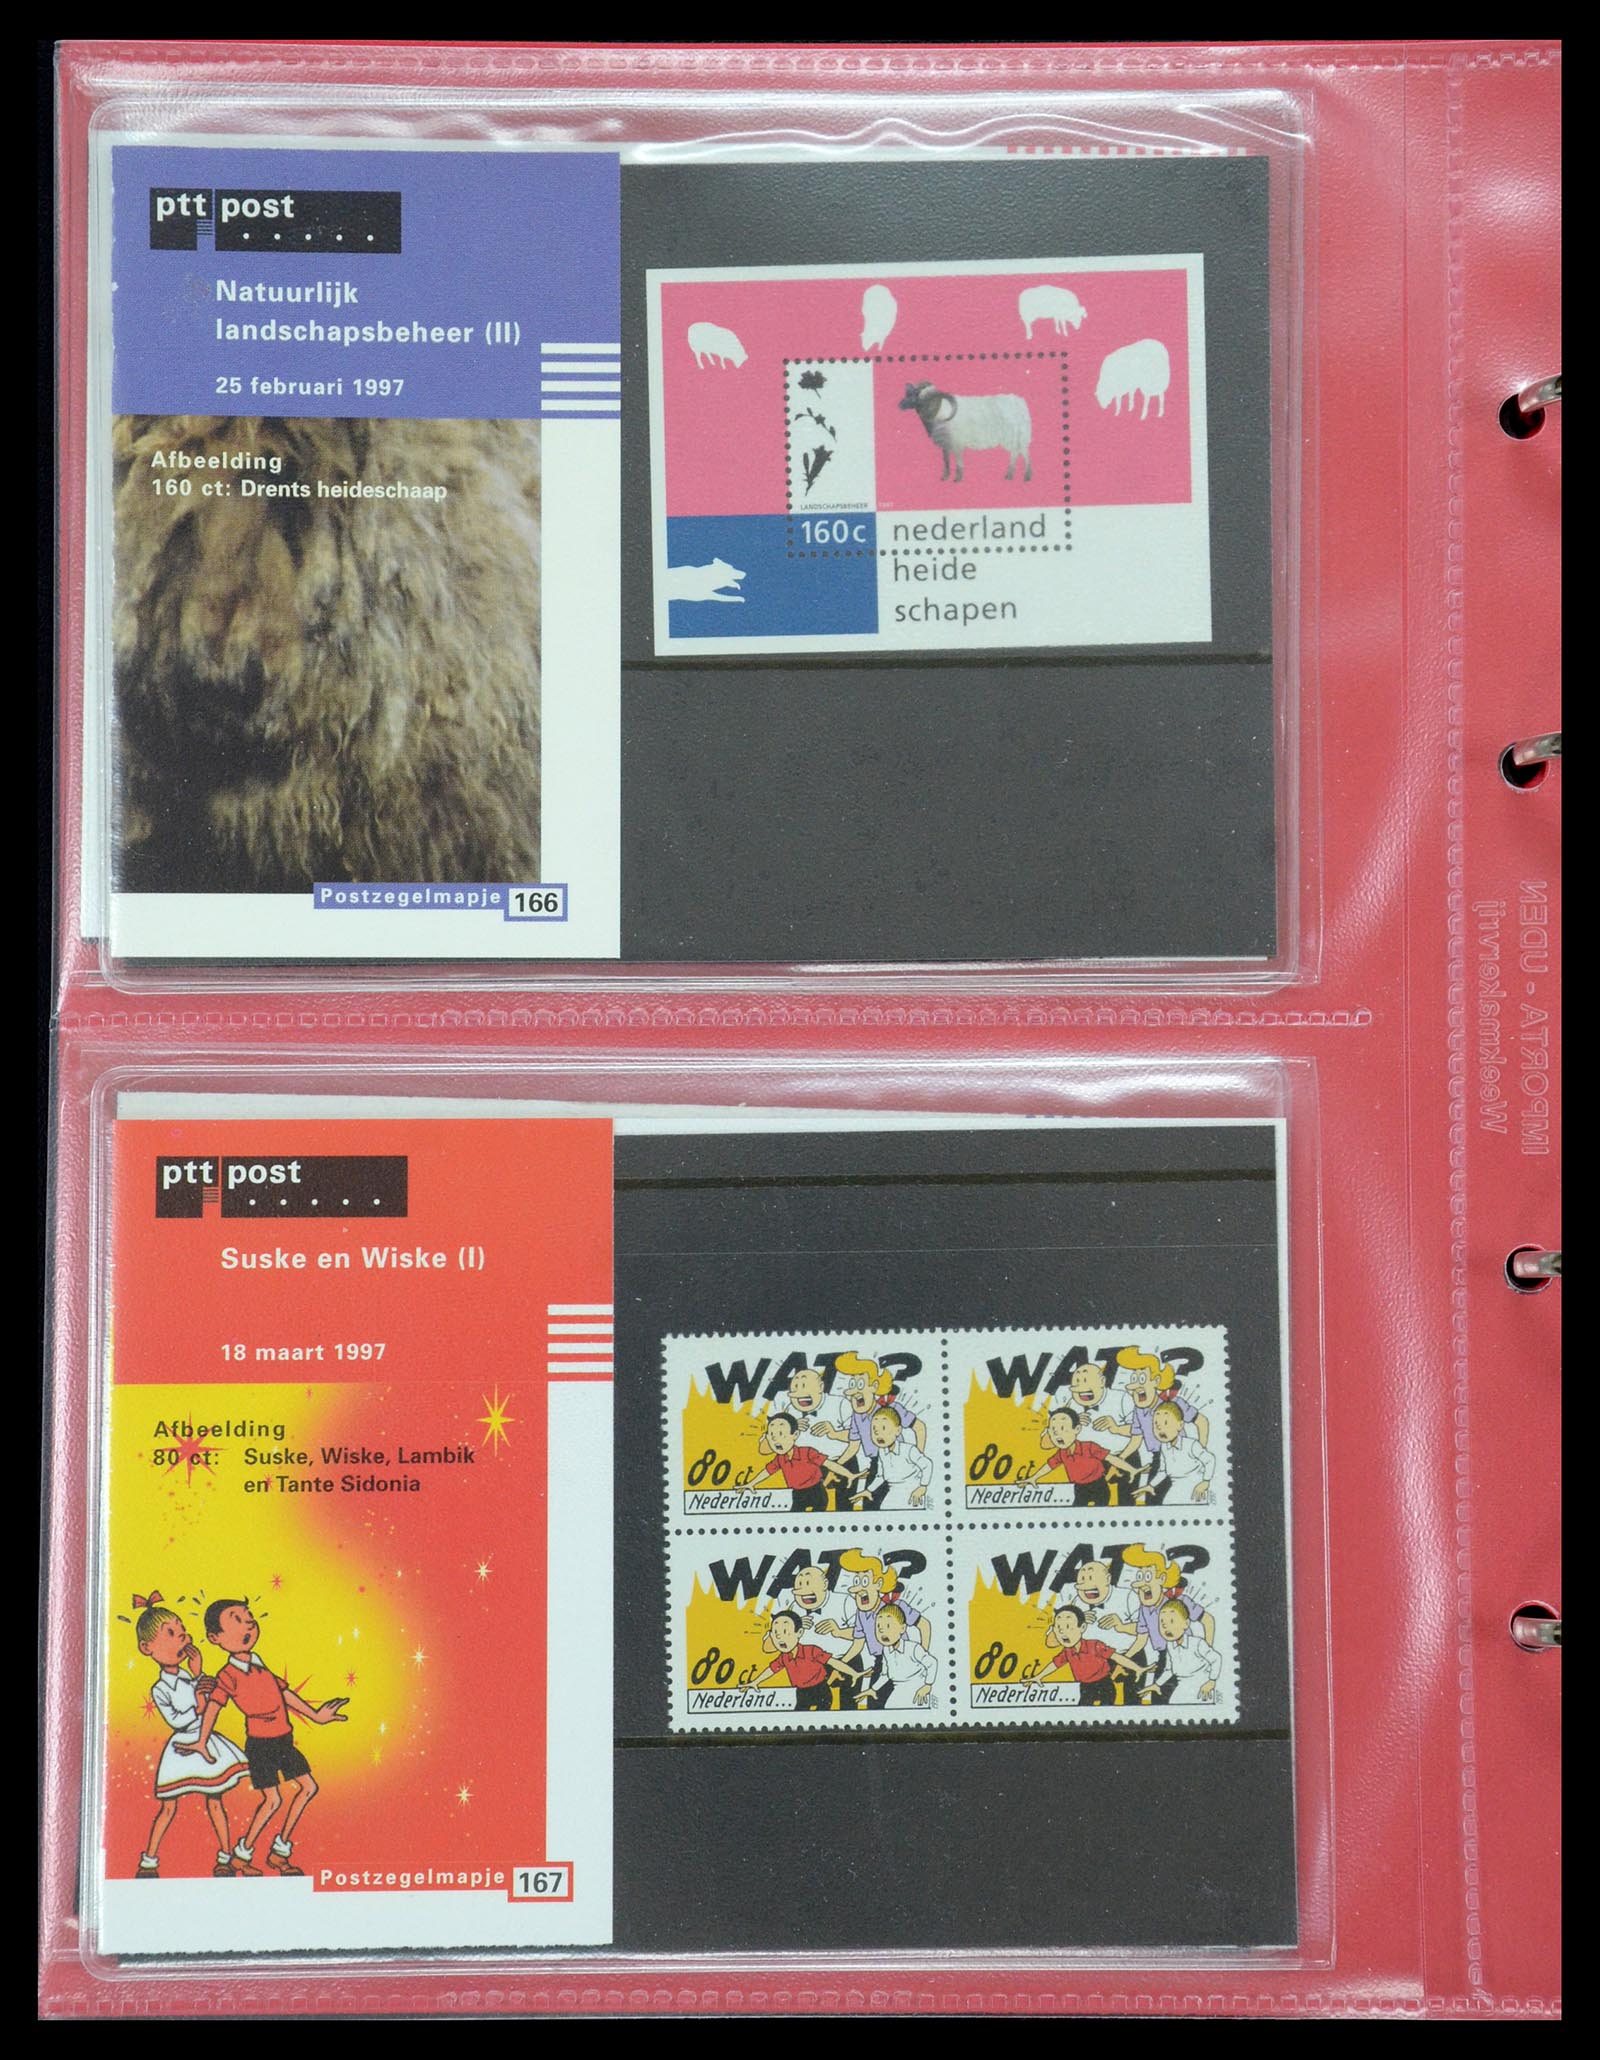 35692 086 - Stamp Collection 35692 Netherlands presentation packs 1982-2021!!